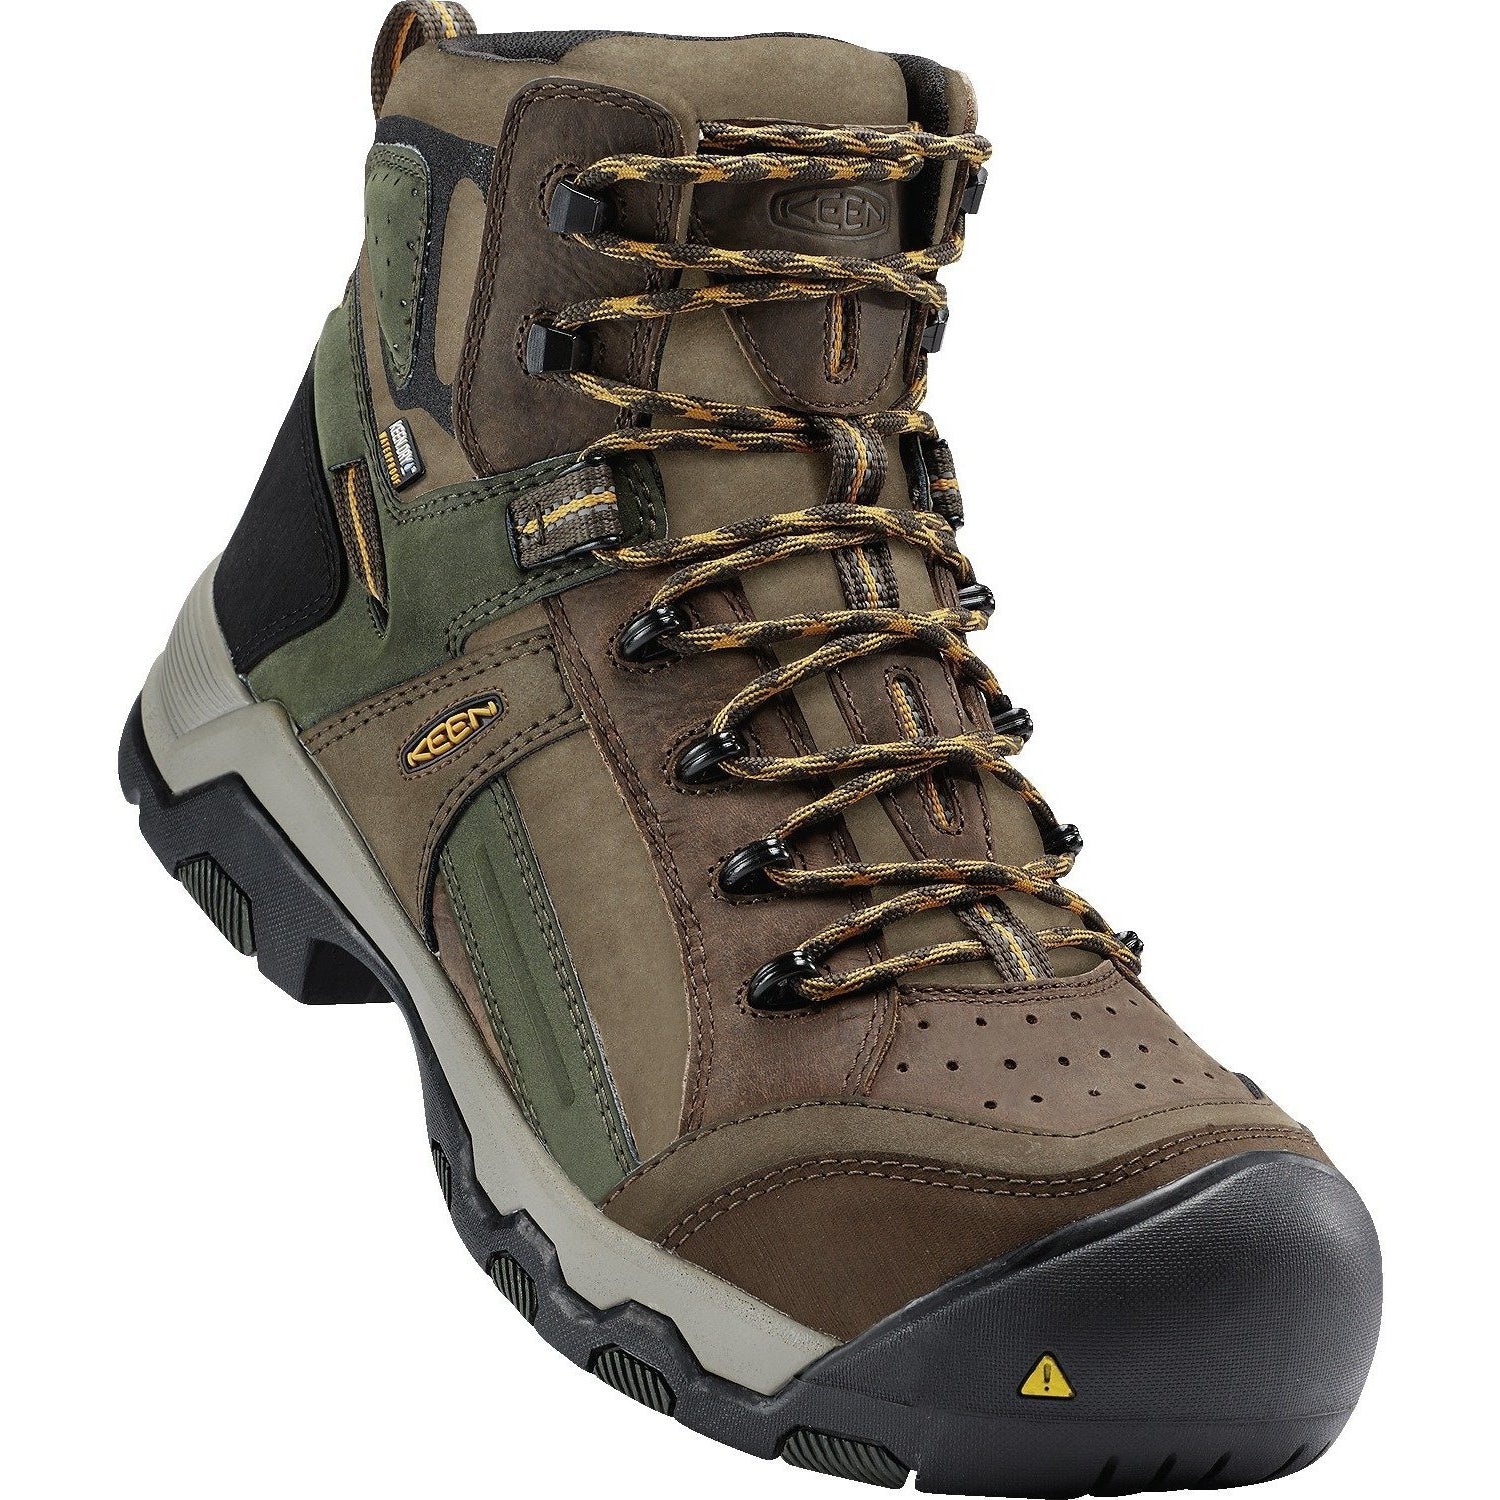 Keen Utility Men's Davenport 6" Mid Comp Toe WP Work Boot - Brown - 1016962 8.5 / Medium / Brown - Overlook Boots